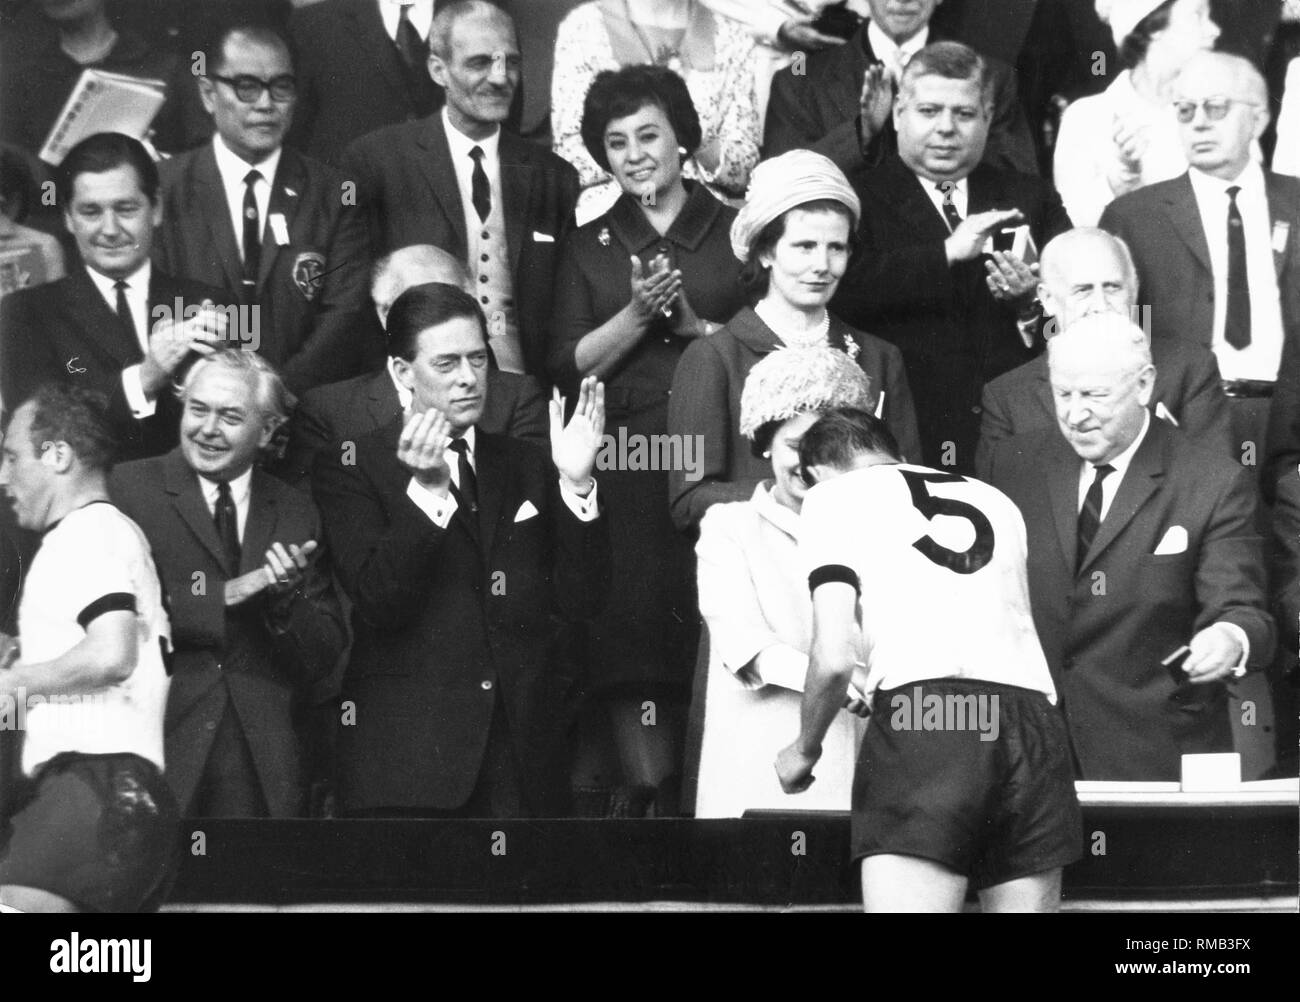 La regina Elisabetta II si congratula con la squadra nazionale di calcio tedesca sul loro titolo mondiale in occasione della Coppa del Mondo in Inghilterra: sinistra Uwe Seeler, destra Willi Schulz. Foto Stock